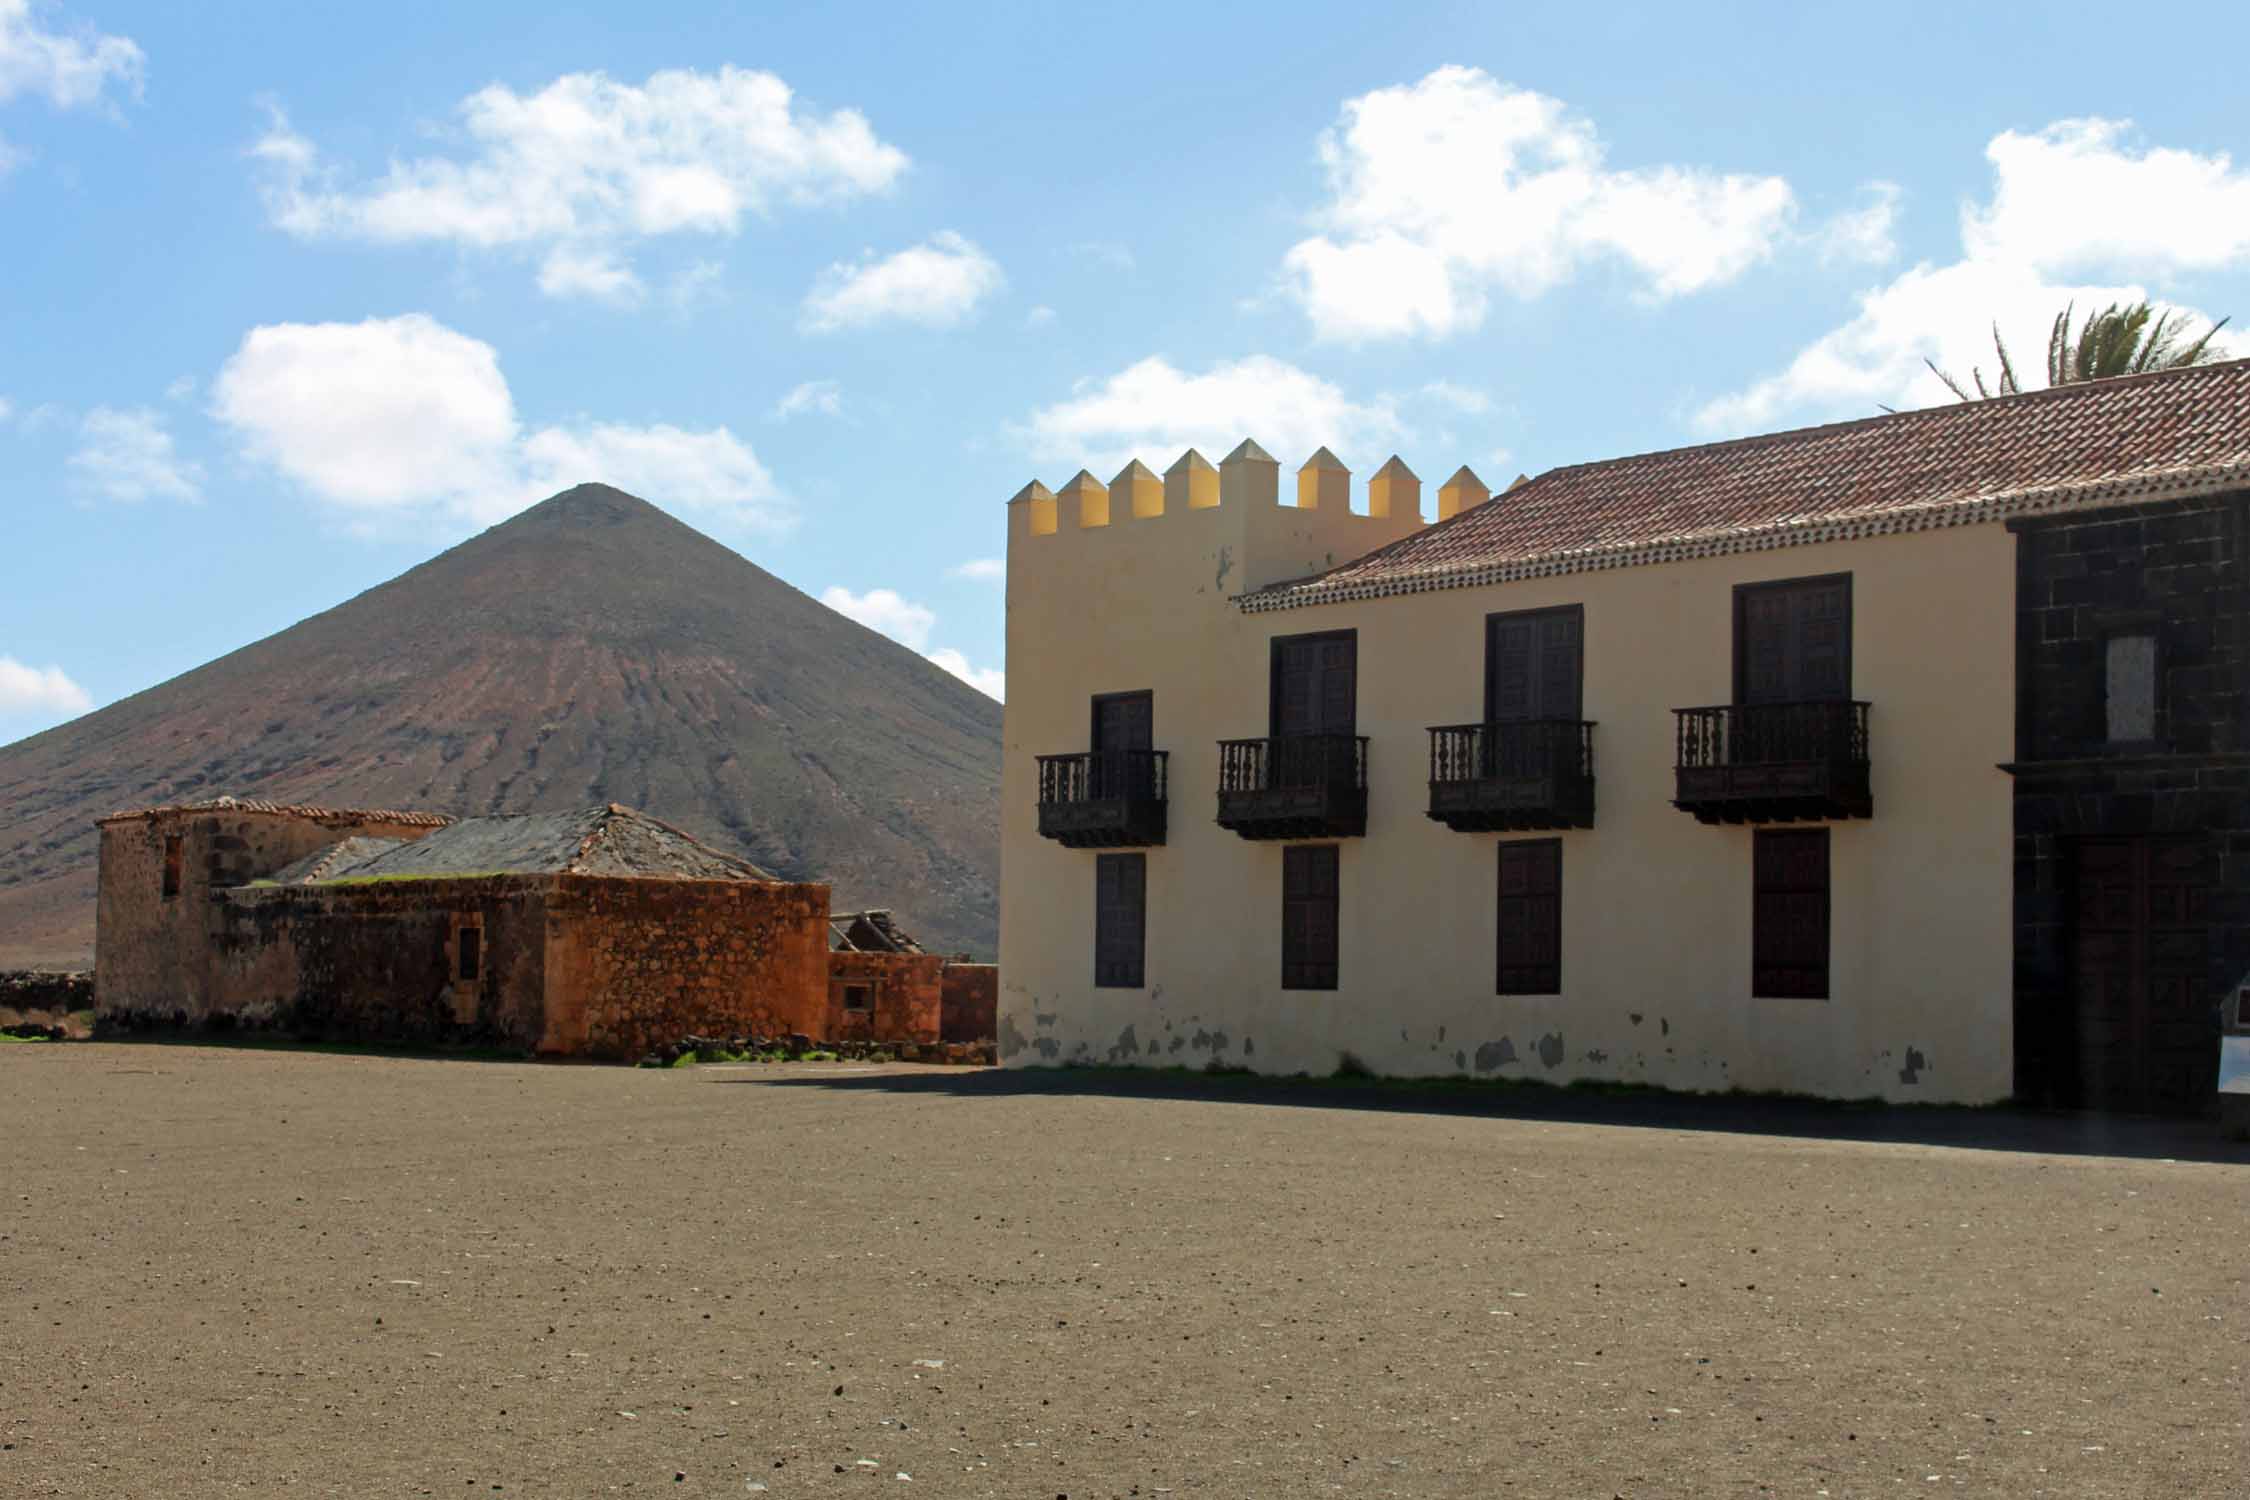 Fuerteventura, Casa de los Corolenes, volcan